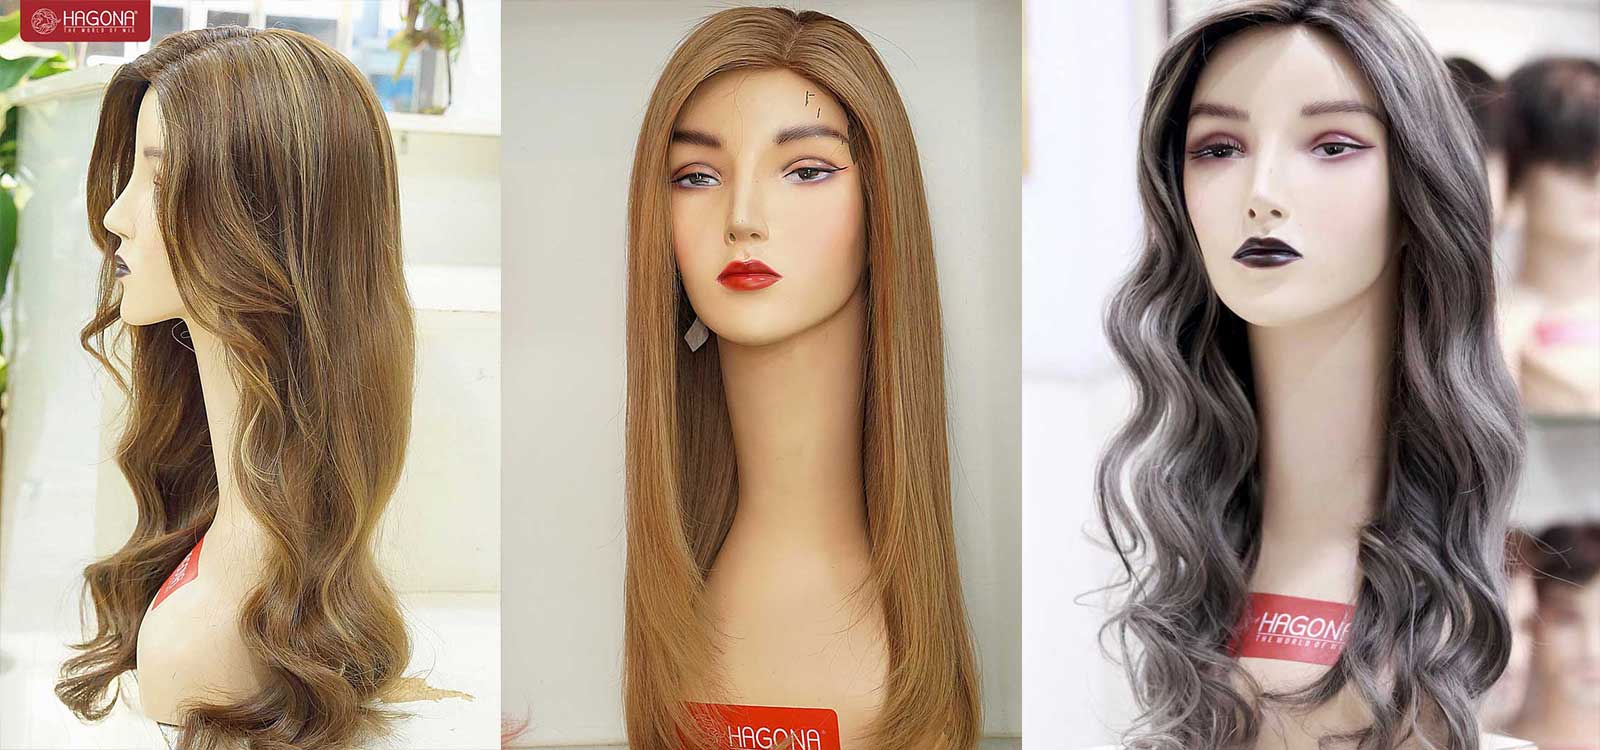 Tóc giả nữ đẹp làm từ tóc thật: Làm mới diện mạo một cách tuyệt vời